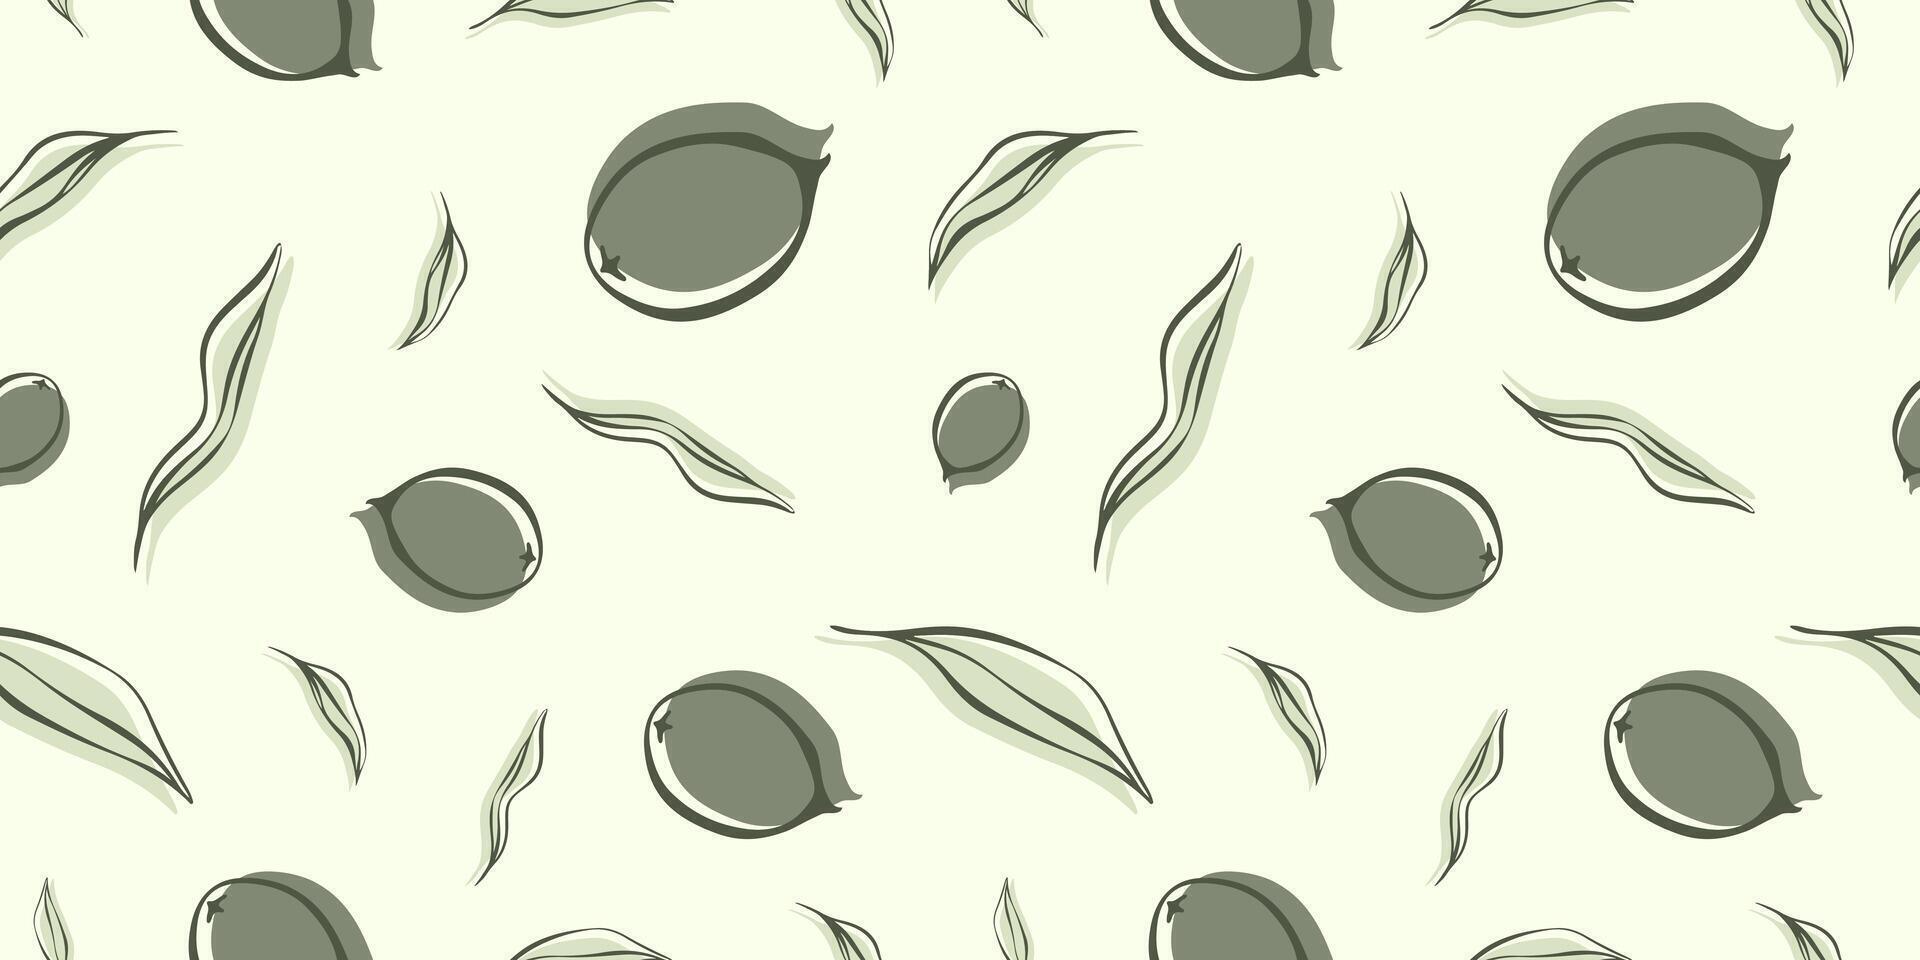 sömlös mönster med oliv gren i modern minimal liner stil. vektor blommig bakgrunder för bröllop inbjudningar, hälsning kort, skriva ut på tyg, tapeter, scrapbooking, gåva slå in och Mer